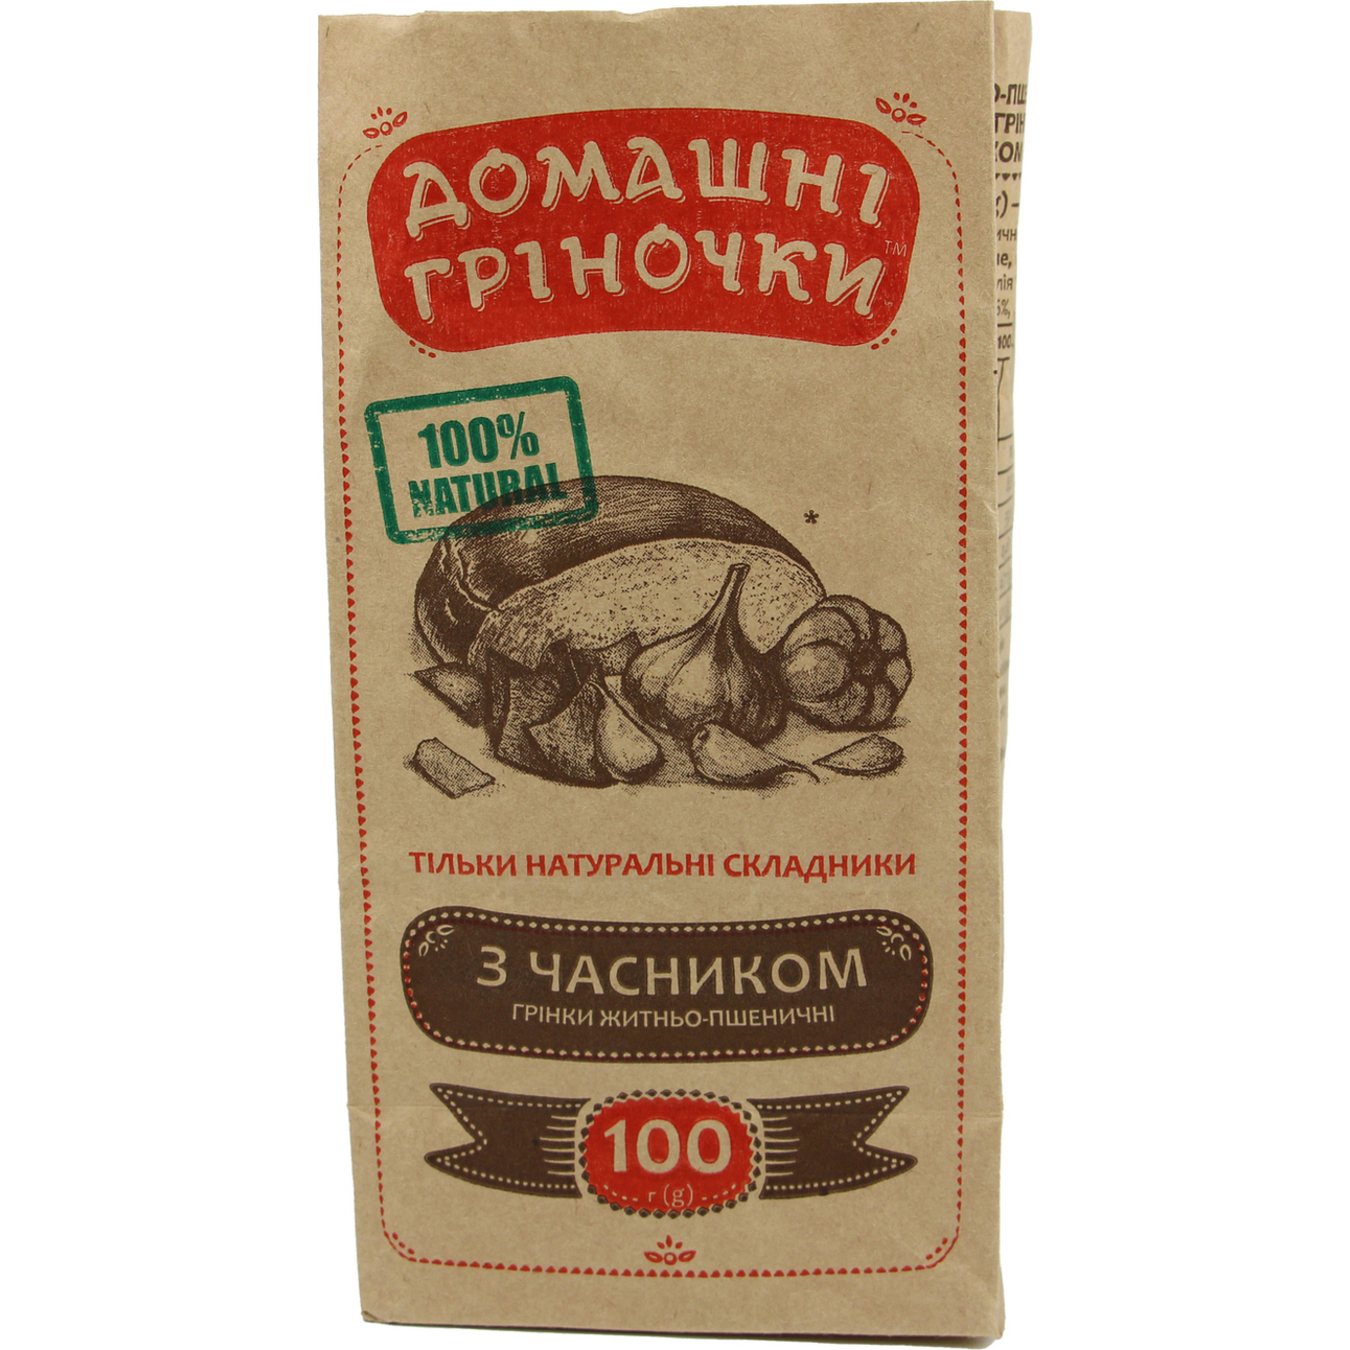 Domashni Grinochki Toasts with Garlic 100g